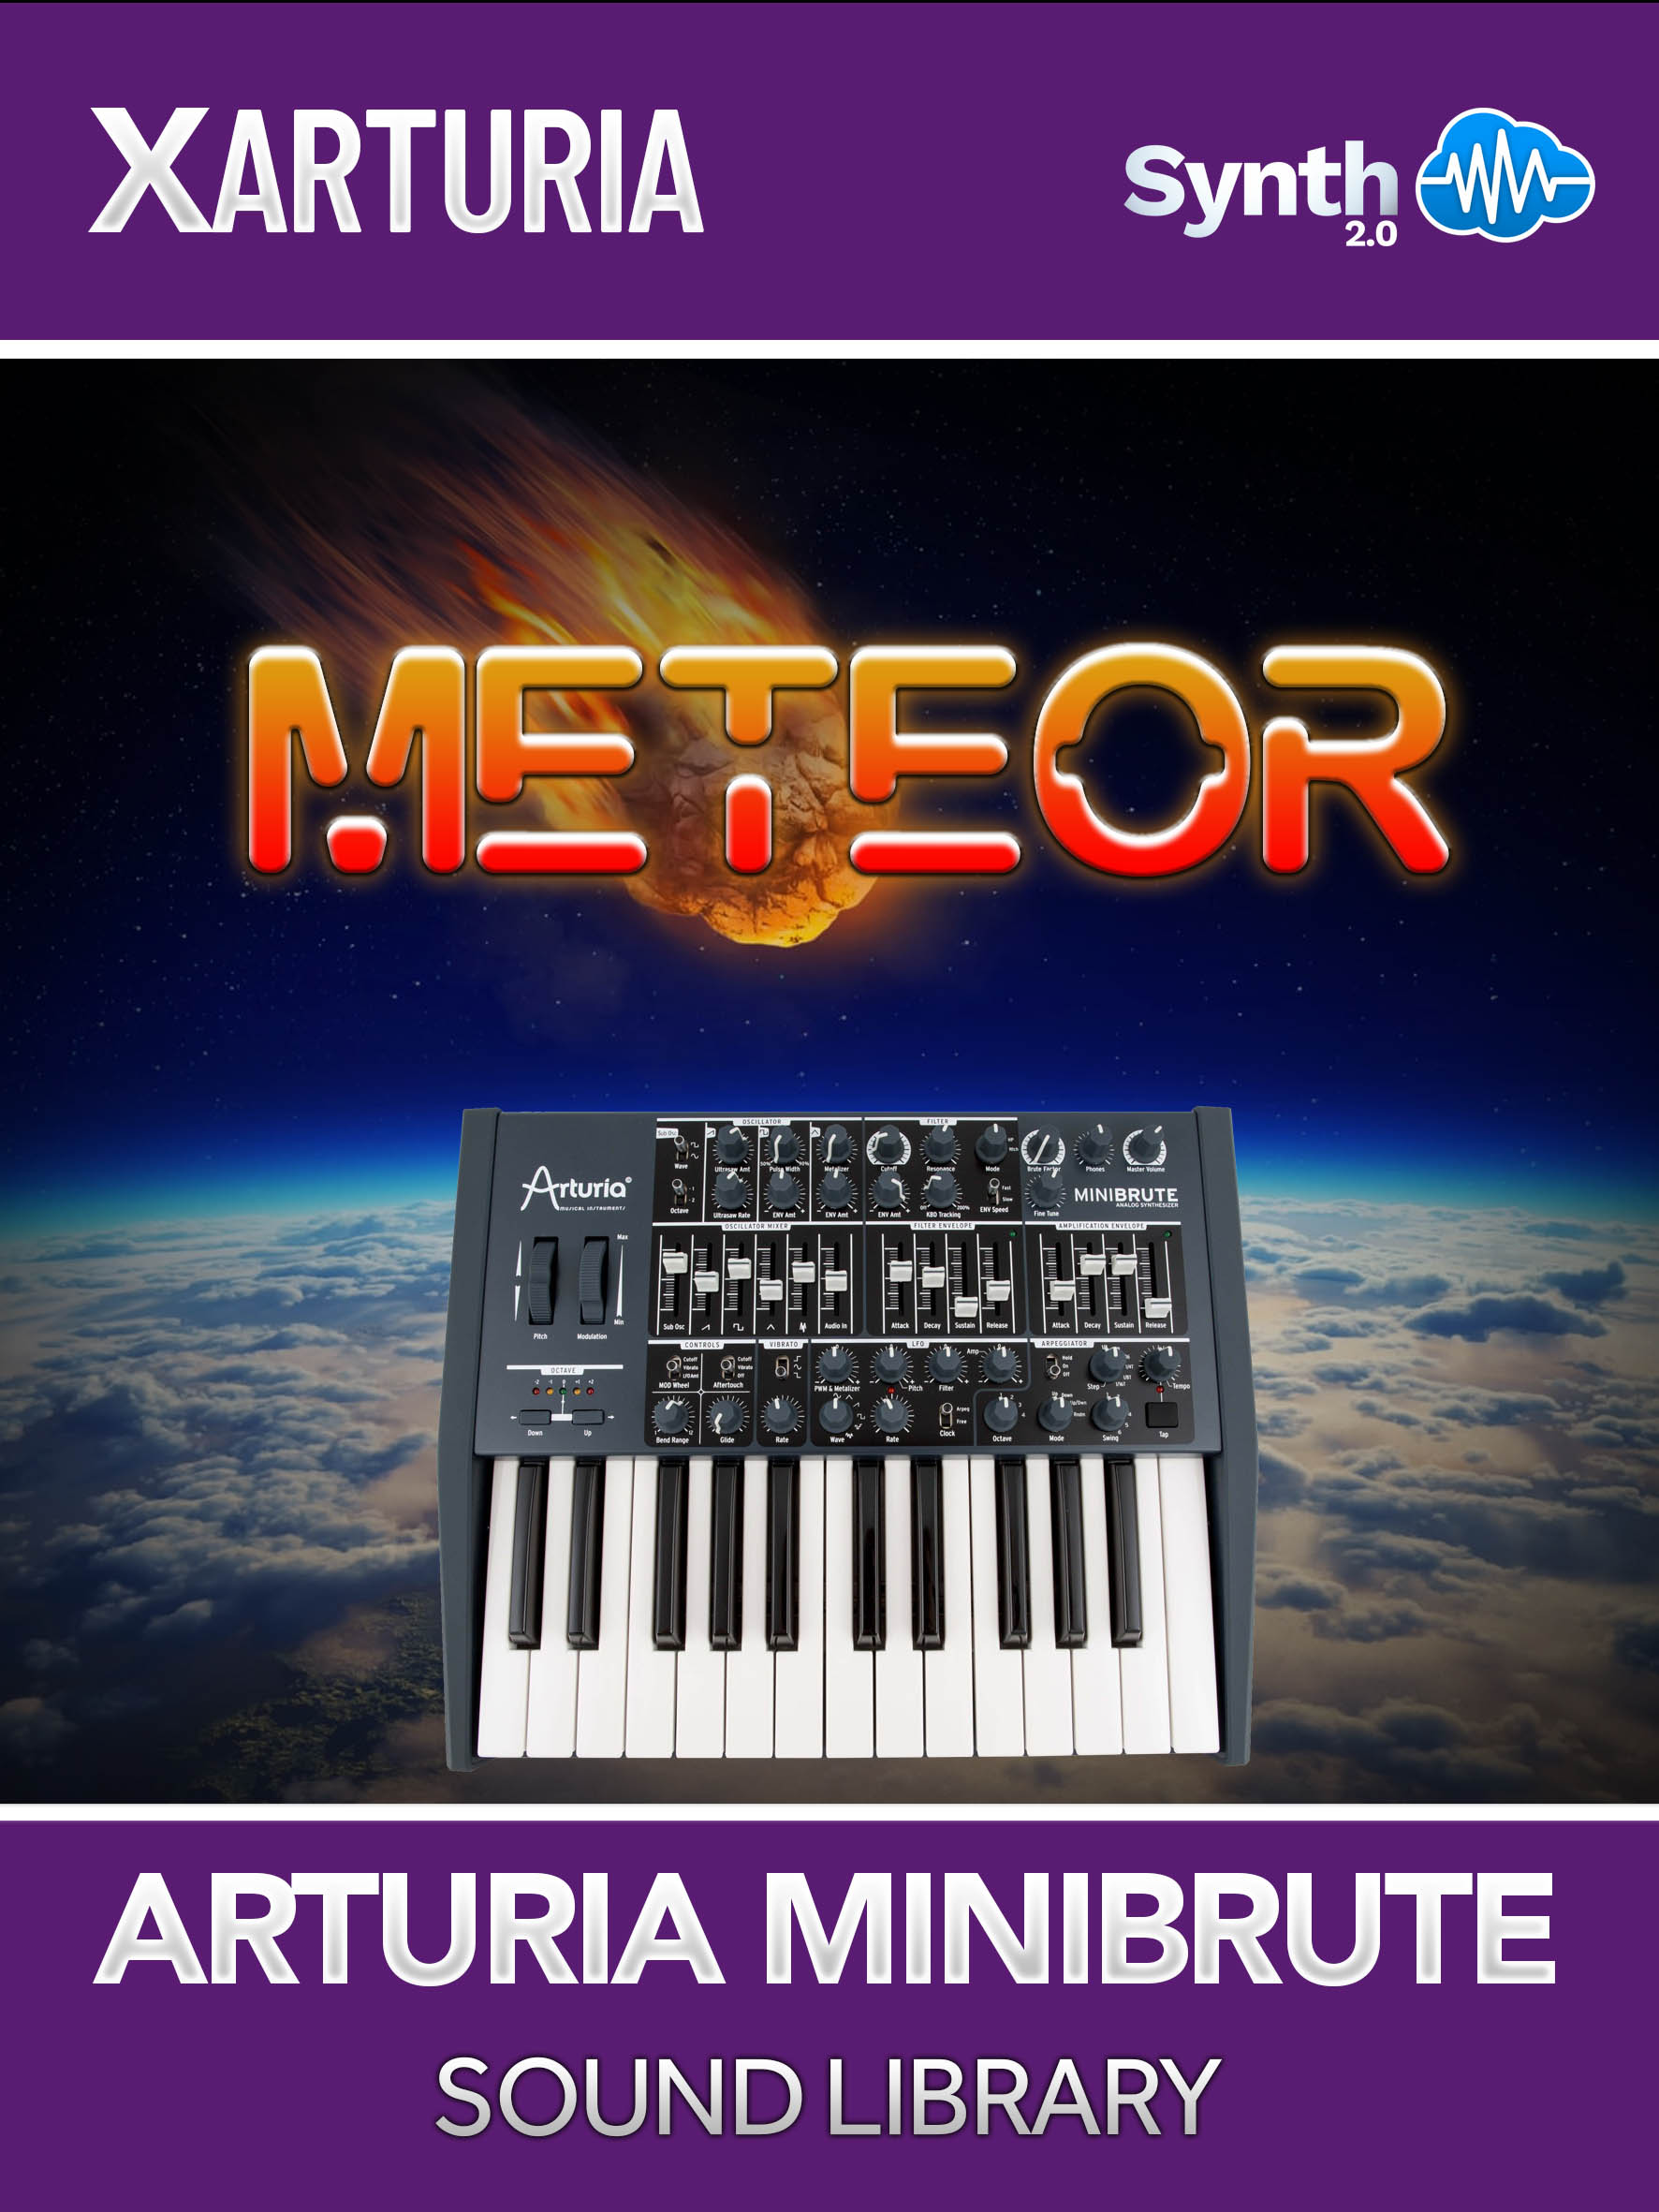 LFO148 - Meteor - Arturia MiniBrute ( 55 presets )